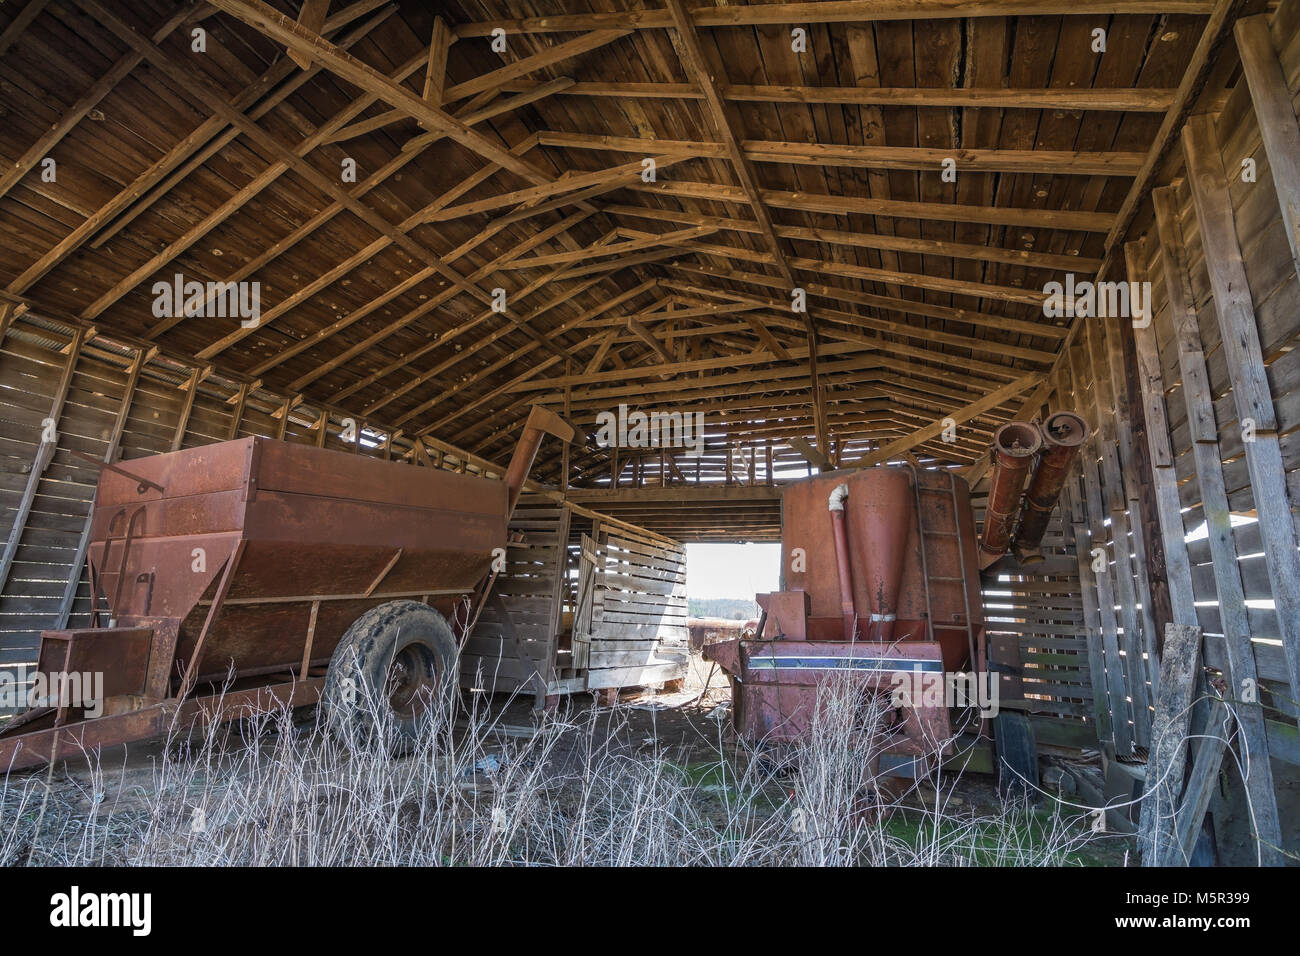 À l'intérieur d'une vieille grange, en plein air. Stocké à l'intérieur est vieux matériel agricole. Banque D'Images